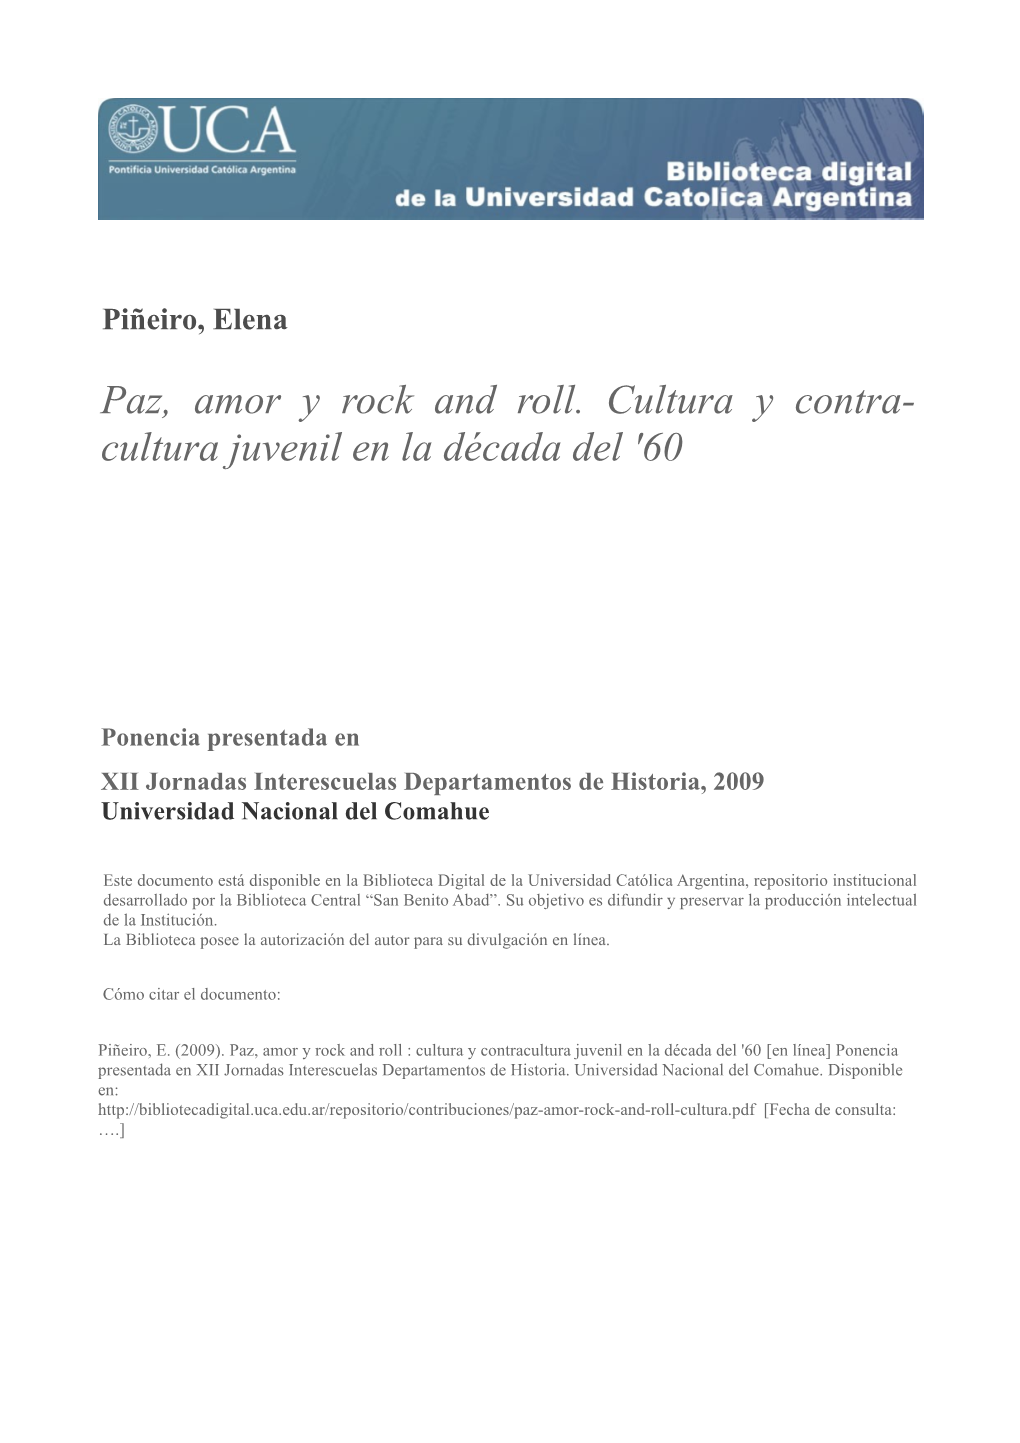 Paz, Amor Y Rock and Roll. Cultura Y Contracultura Juvenil En La Década Del ’60